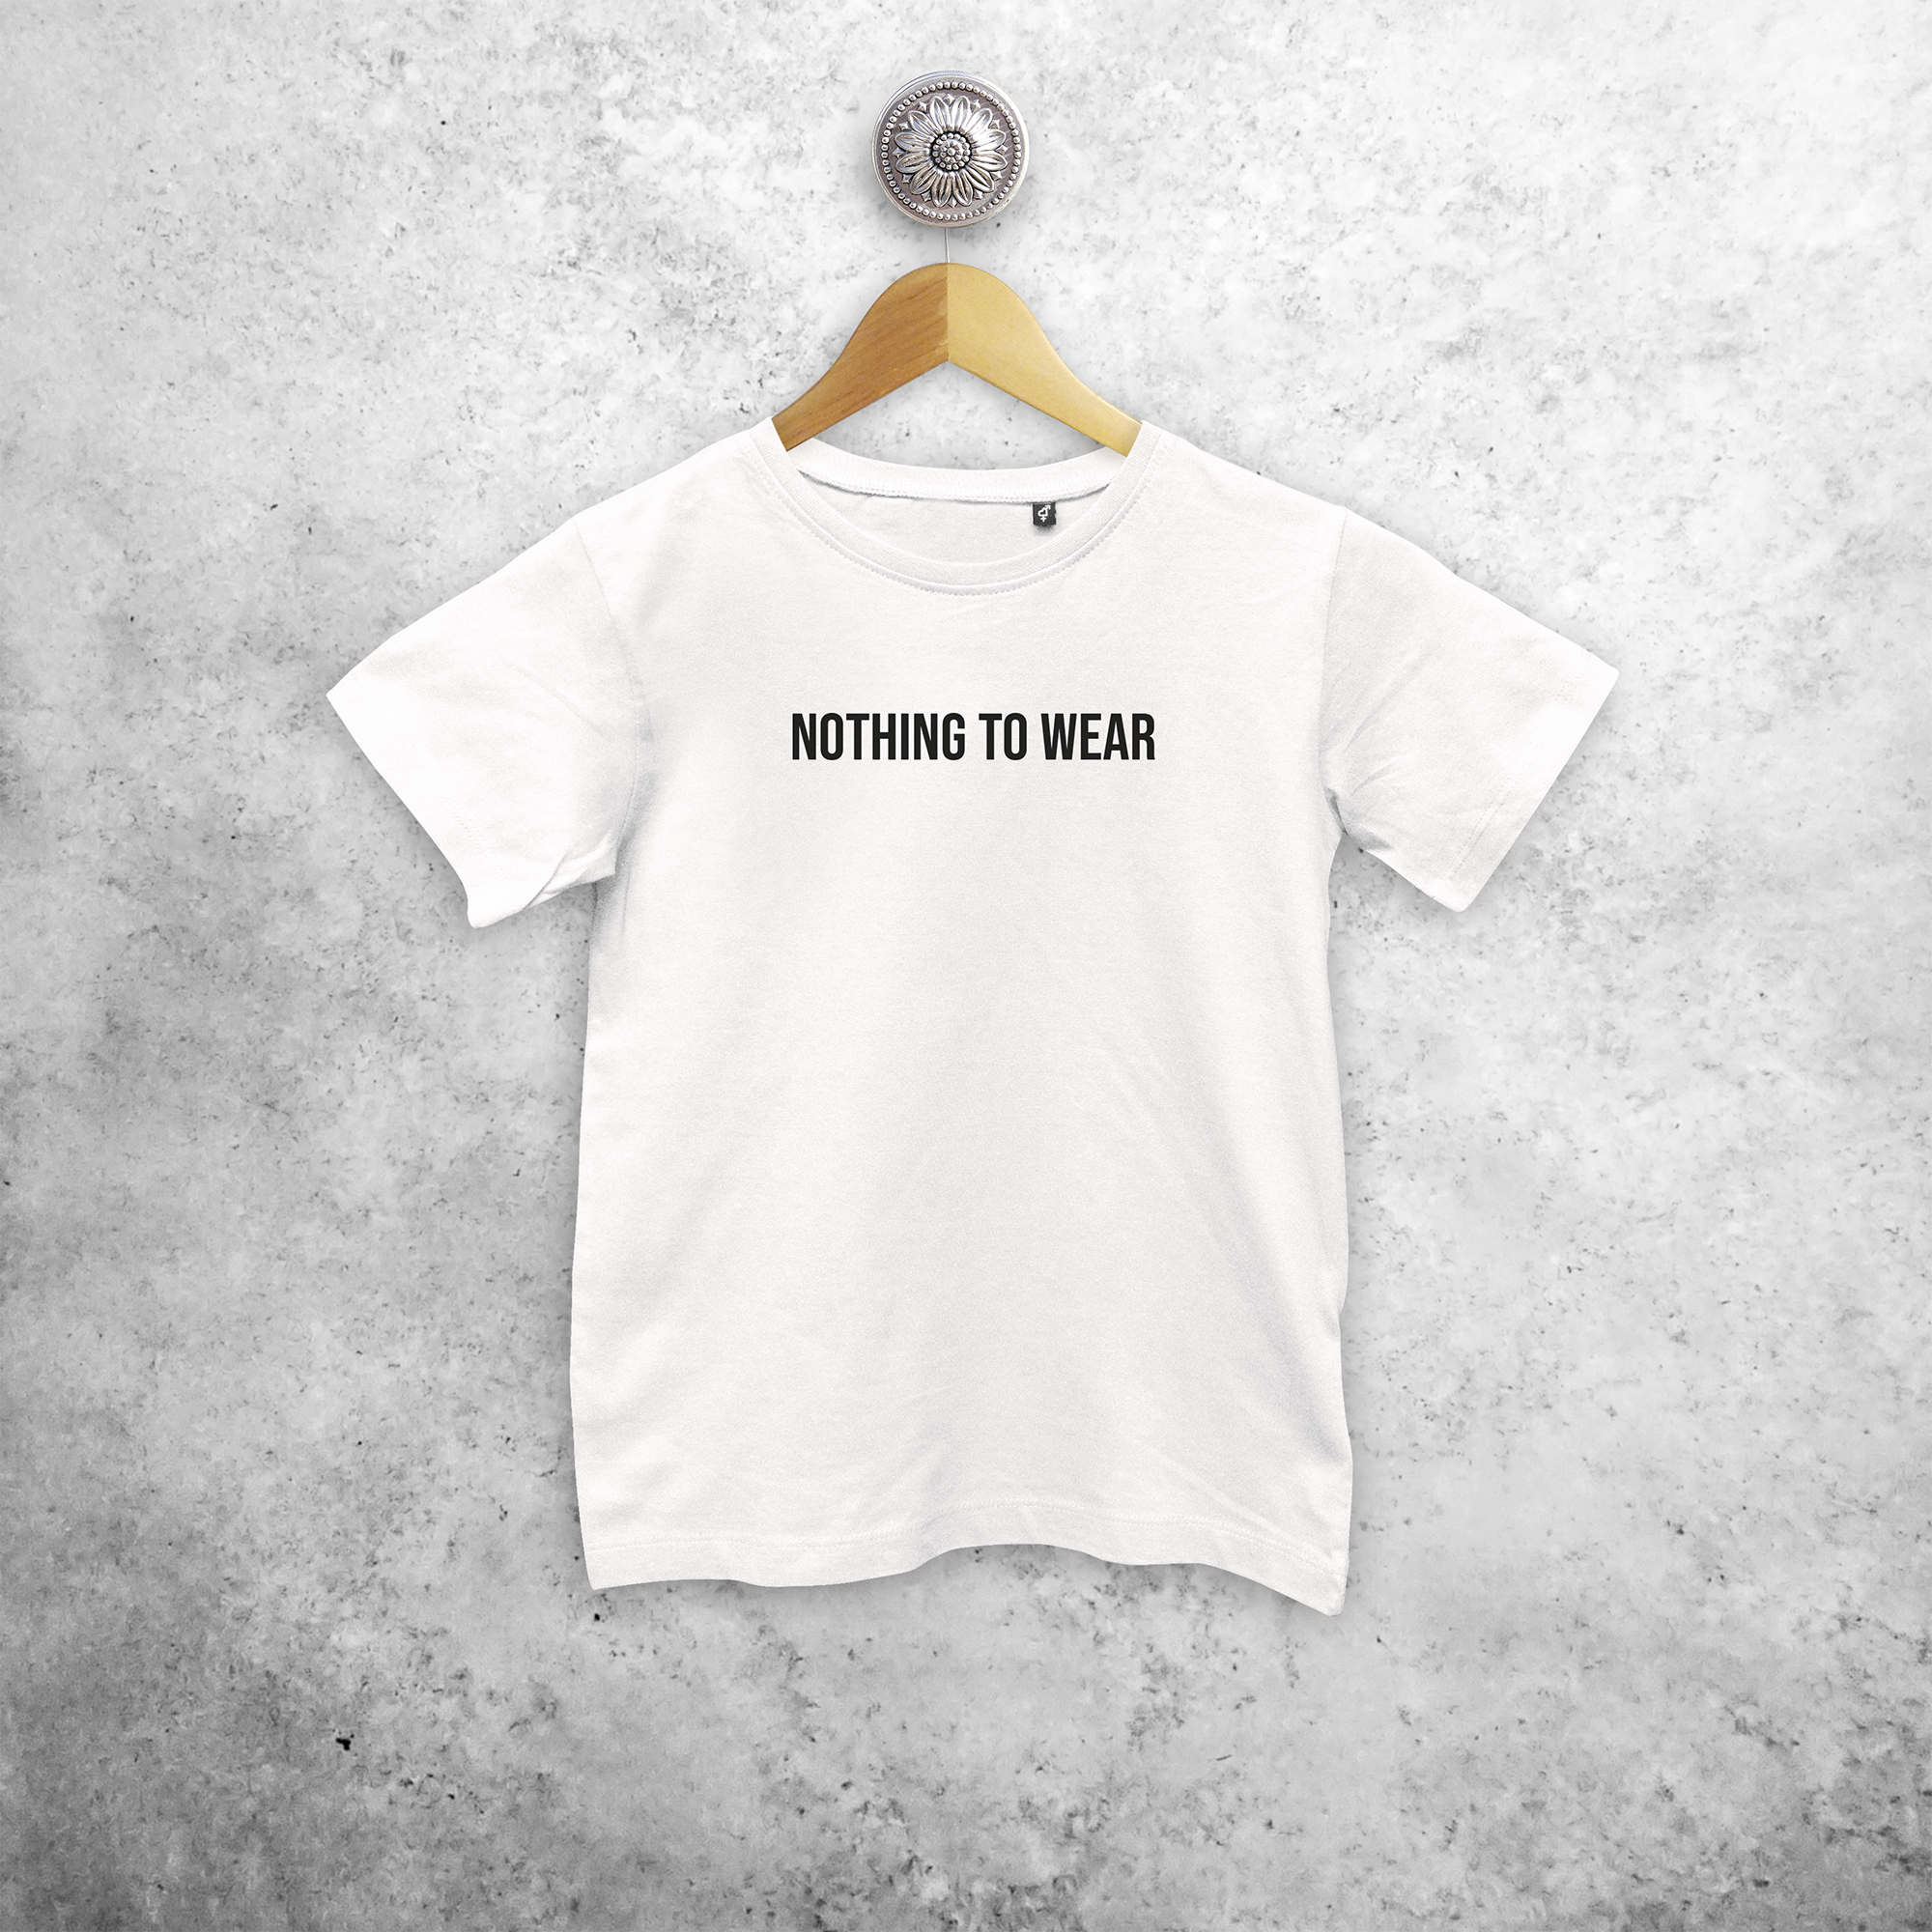 'Nothing to wear' kids shortsleeve shirt